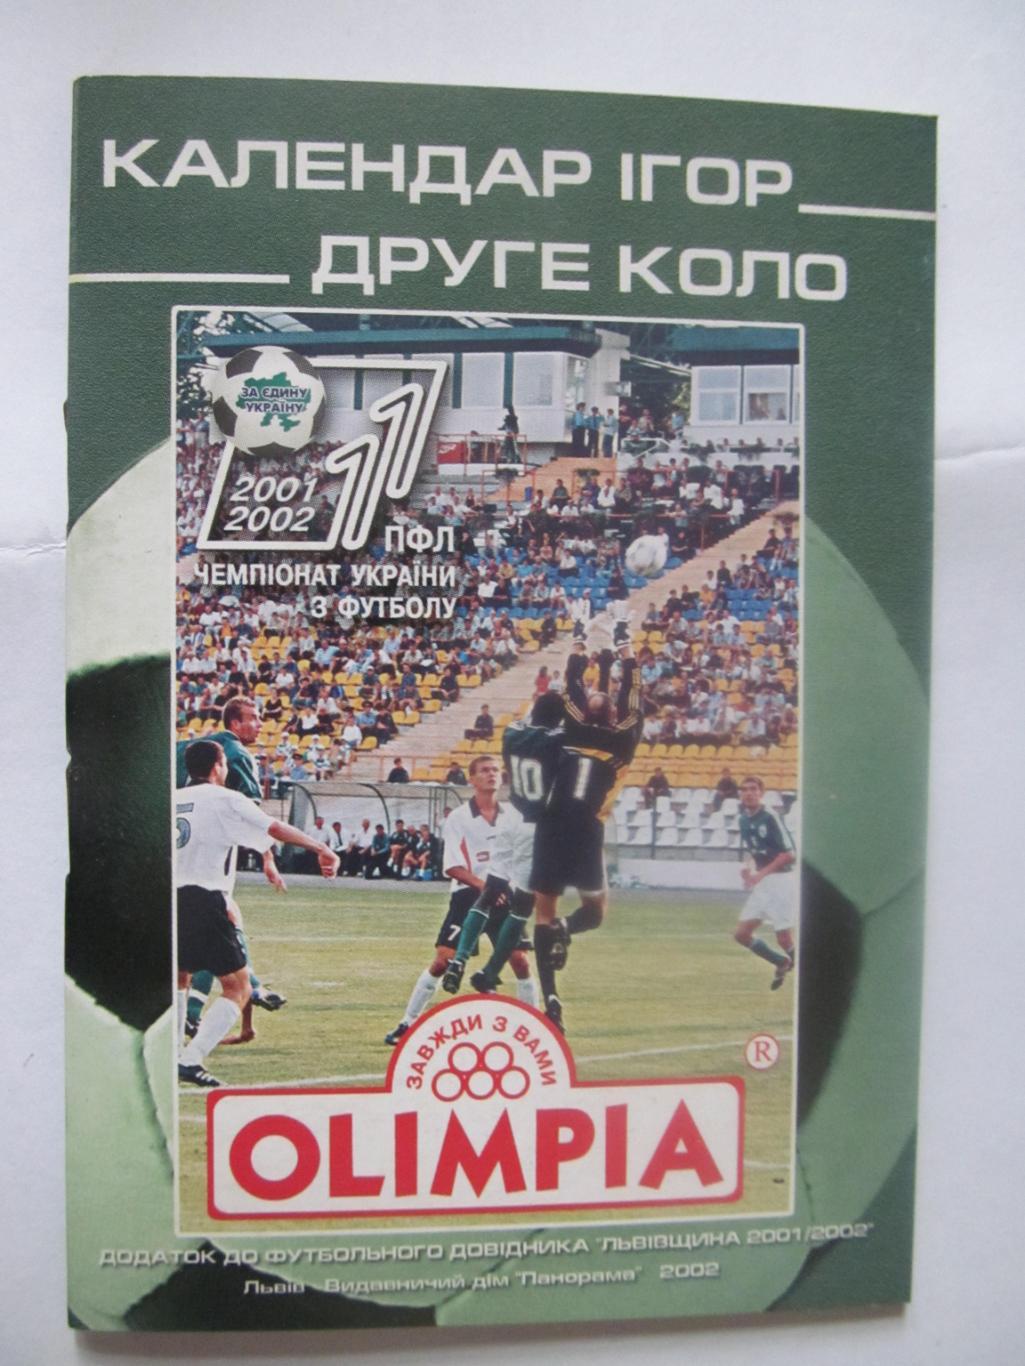 Календар -довідник. 2 коло. Львів. Сезон 2001/2002. Olimpia.*.